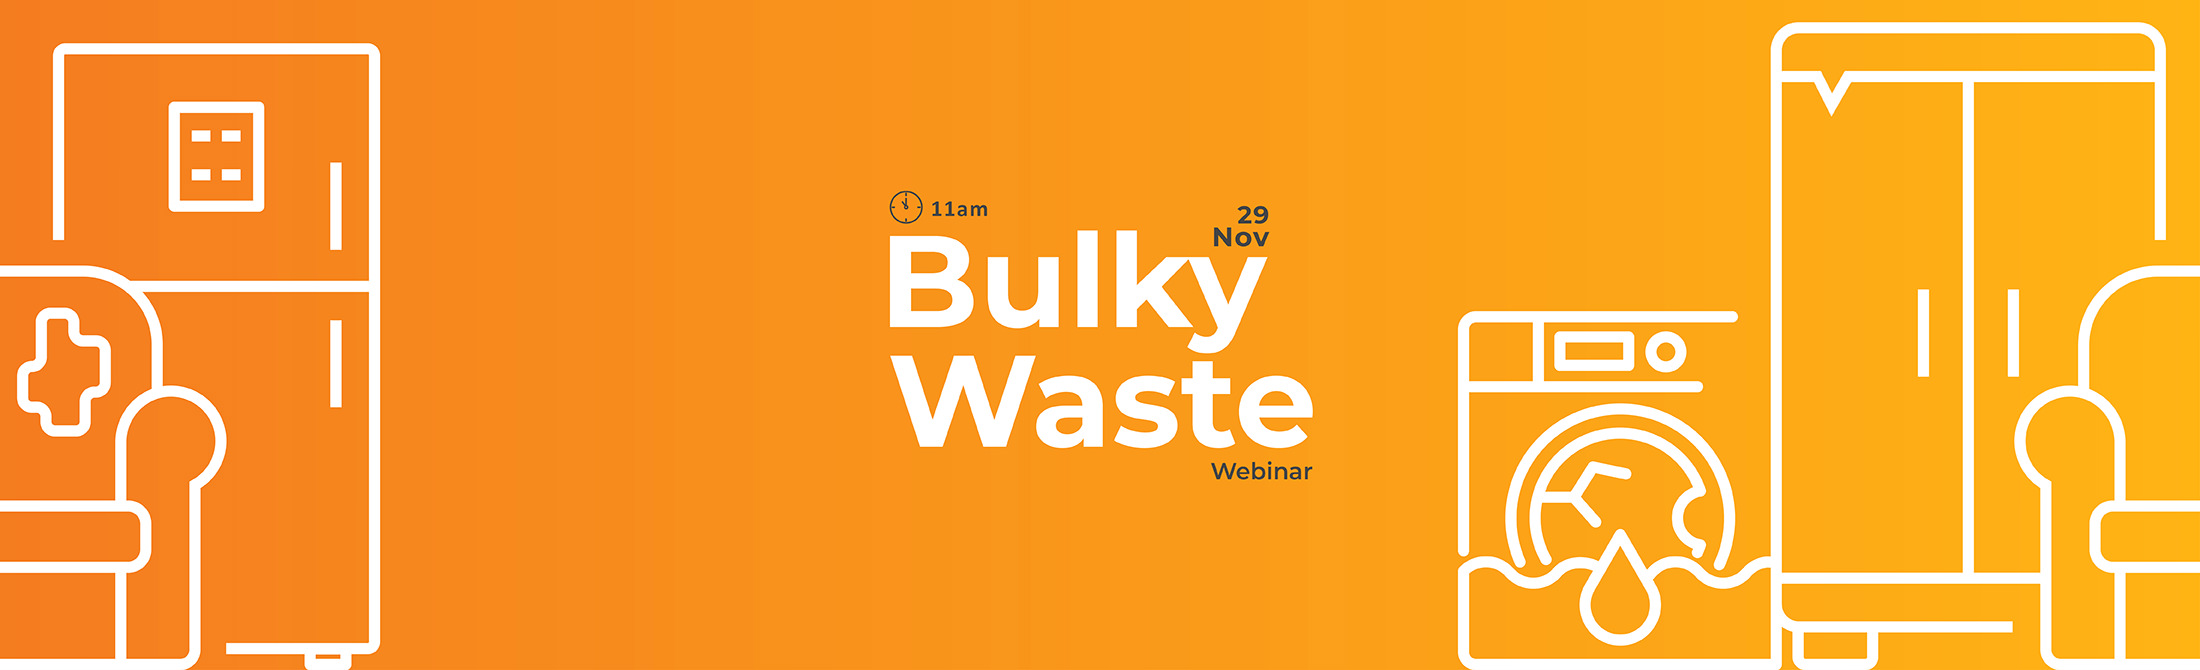 Bulky Waste Webinar